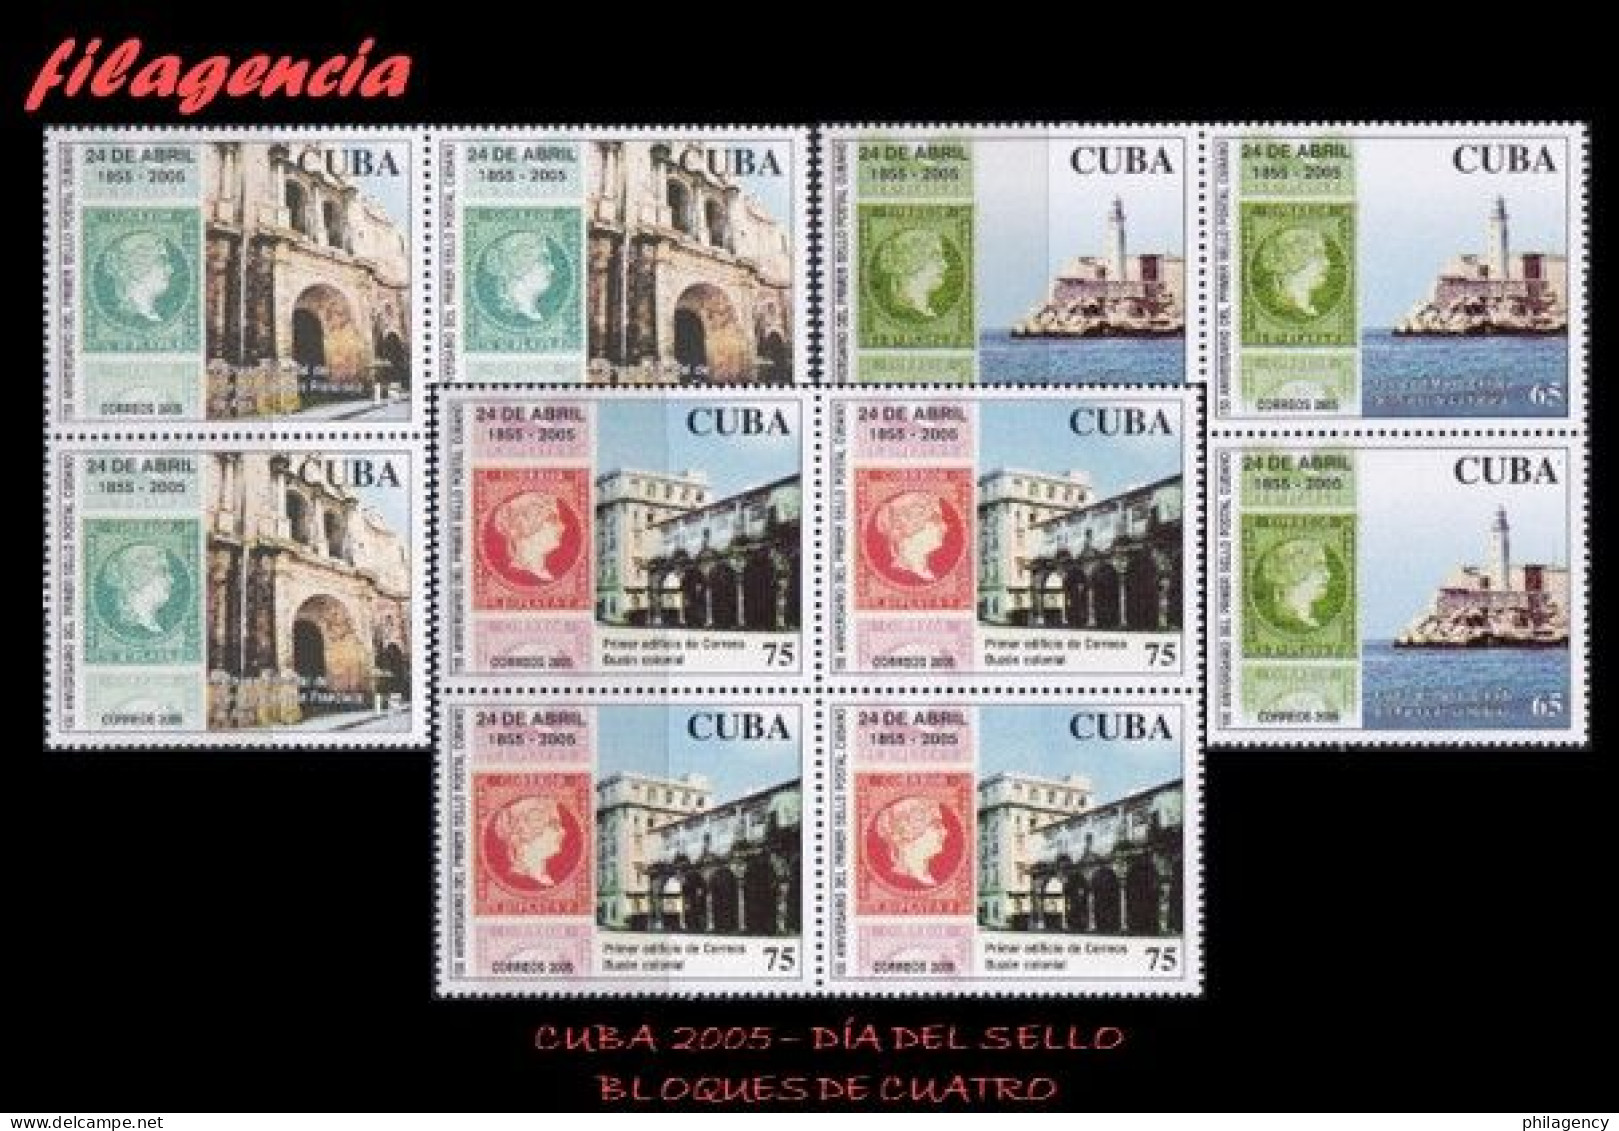 CUBA. BLOQUES DE CUATRO. 2005-14 DÍA DEL SELLO CUBANO. PRIMERA EMISIÓN DE SELLOS CIRCULADOS EN CUBA - Ongebruikt